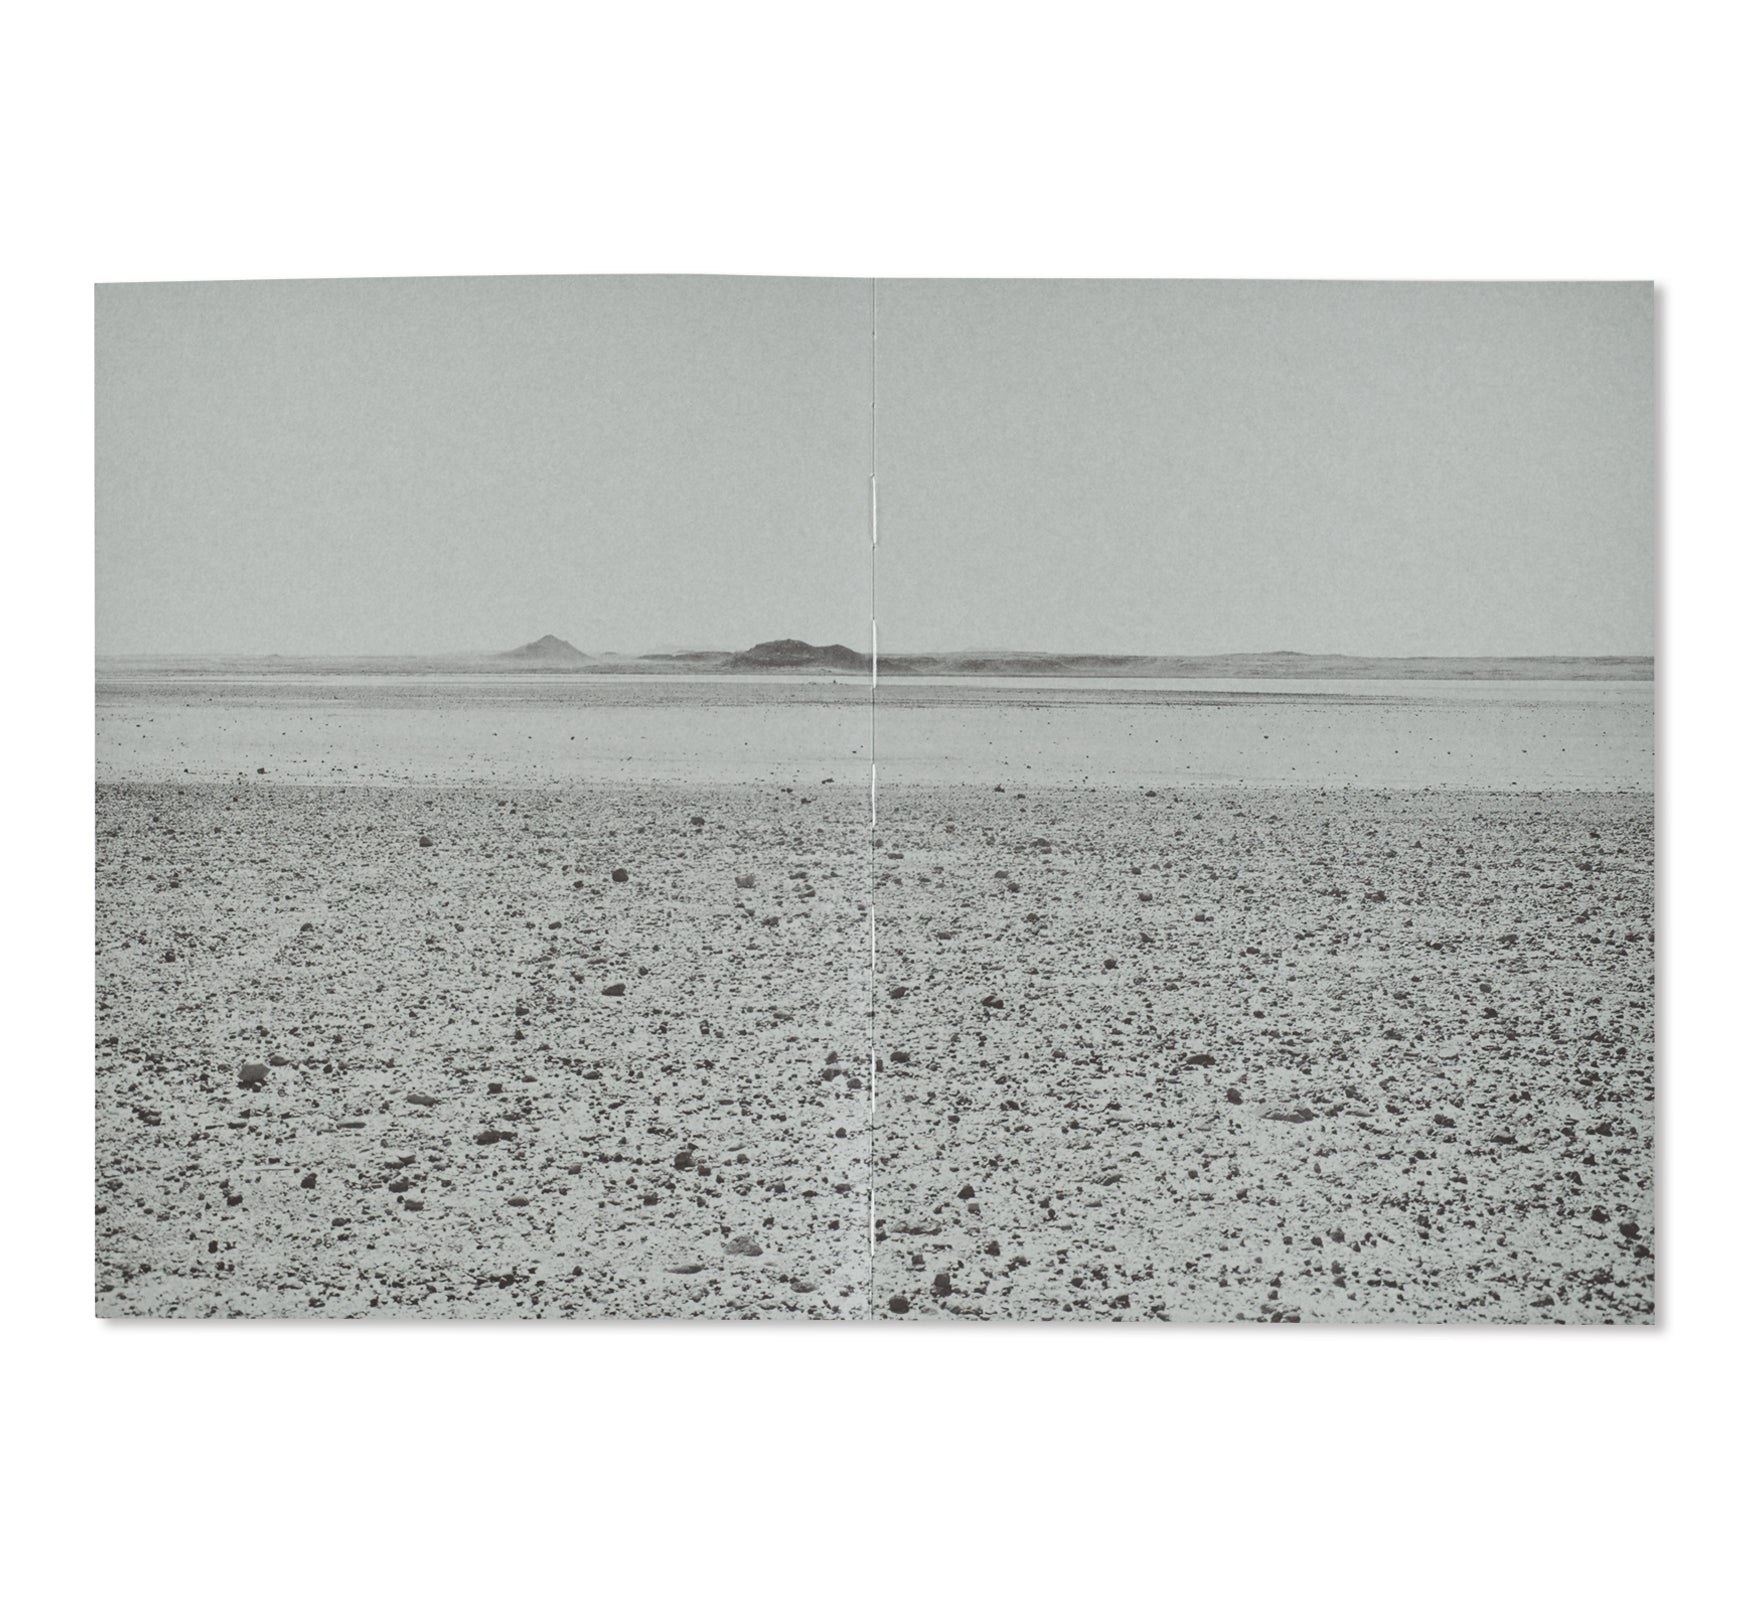 THE LAND IN BETWEEN by Ursula Schulz-Dornburg